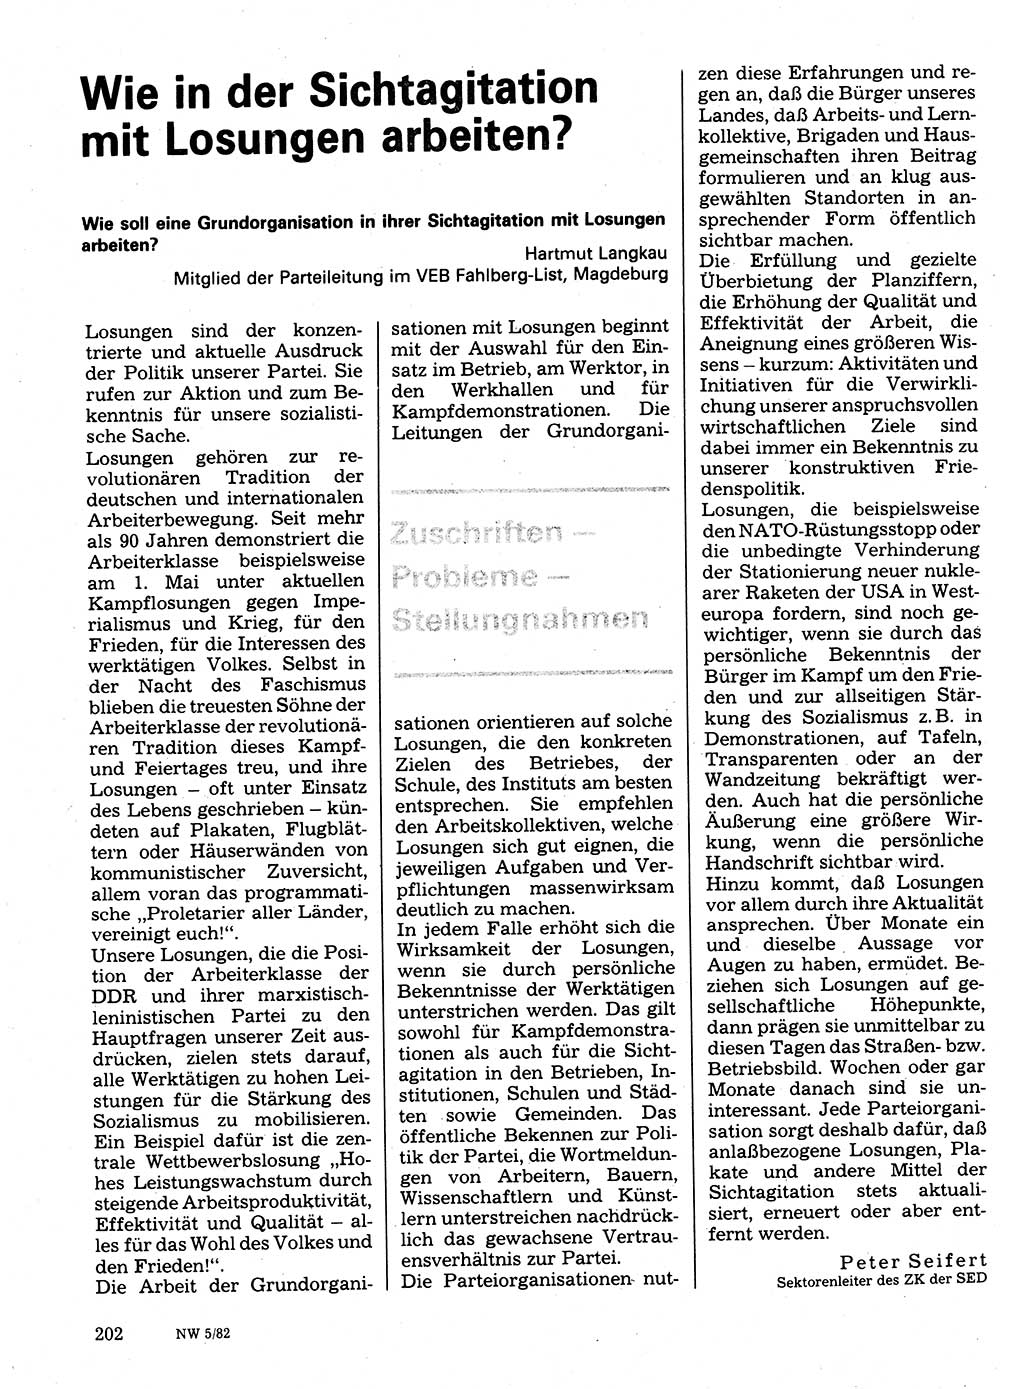 Neuer Weg (NW), Organ des Zentralkomitees (ZK) der SED (Sozialistische Einheitspartei Deutschlands) für Fragen des Parteilebens, 37. Jahrgang [Deutsche Demokratische Republik (DDR)] 1982, Seite 202 (NW ZK SED DDR 1982, S. 202)